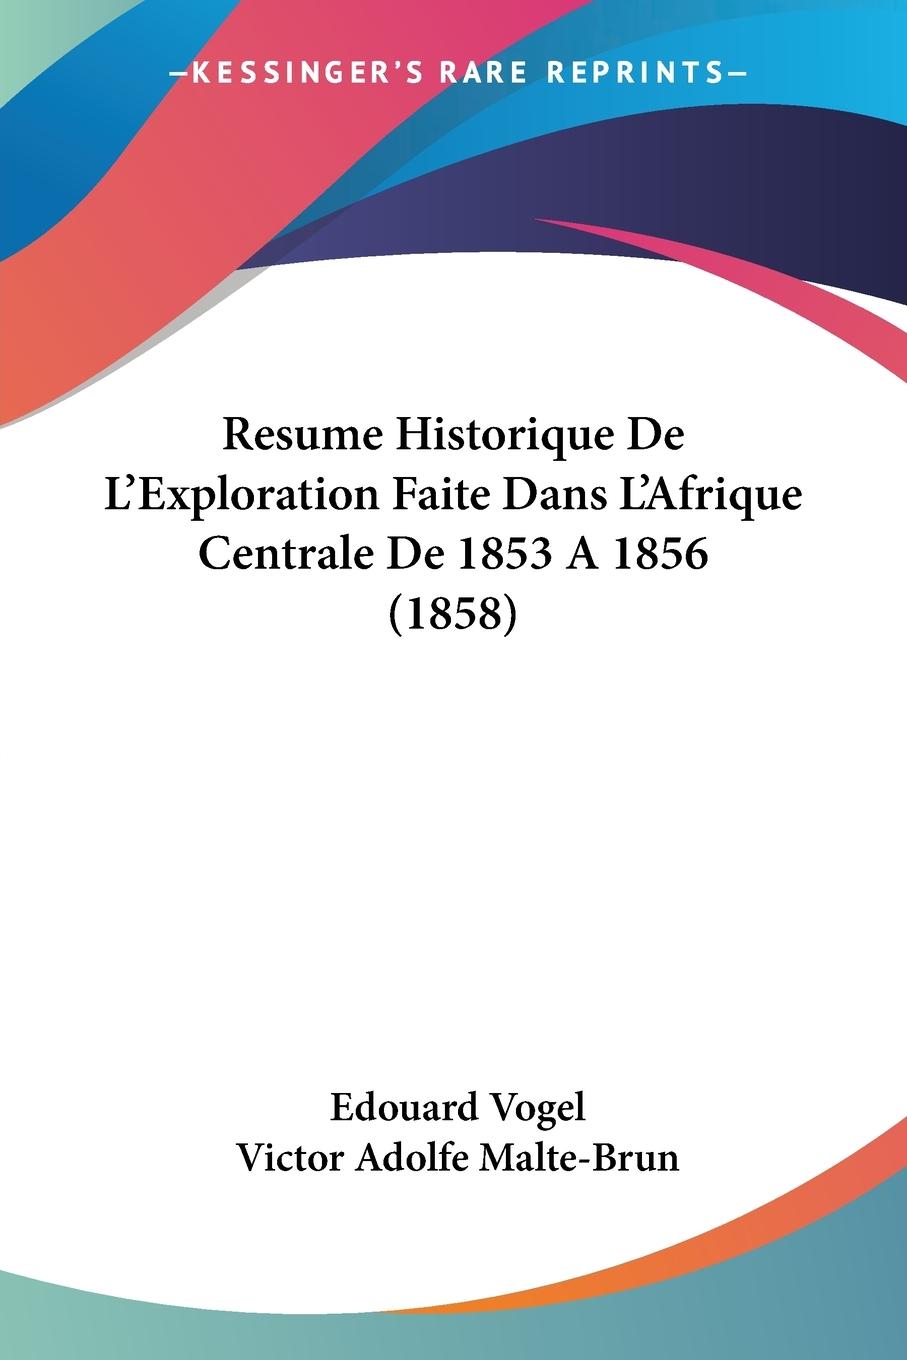 Resume Historique De L Exploration Faite Dans L Afrique Centrale De 1853 A 1856 (1858) - Vogel, Edouard Malte-Brun, Victor Adolfe